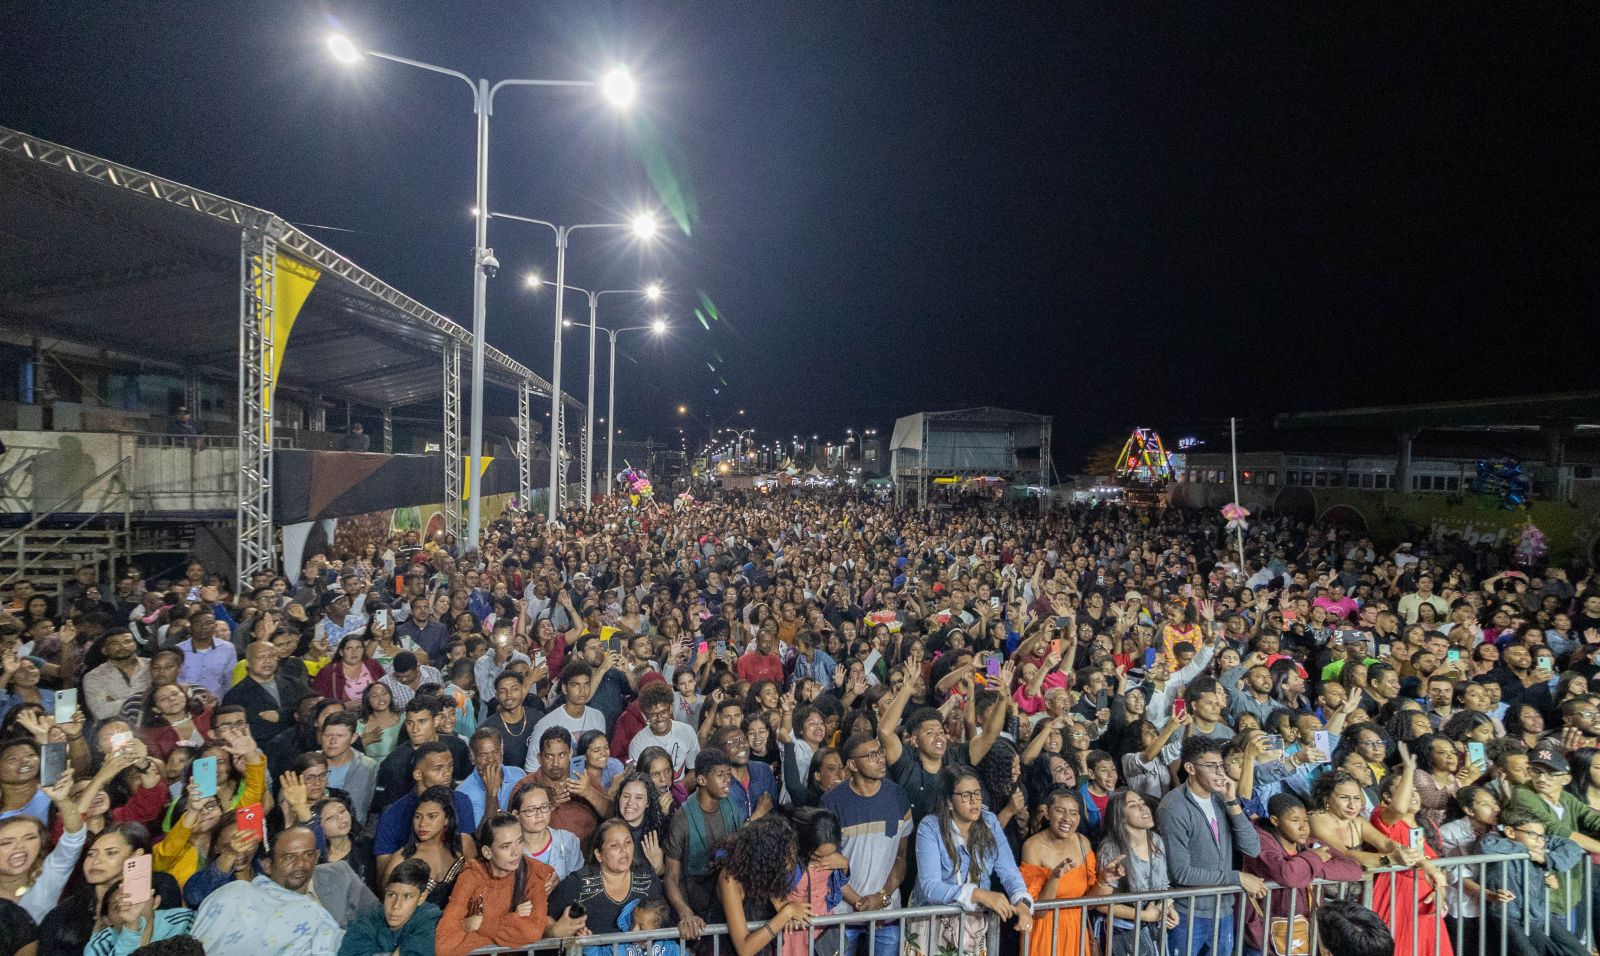 Primeira noite do evento foi dedicada à música gospel, atraindo uma multidão de fiéis de várias partes da região. (Foto: Divulgação)